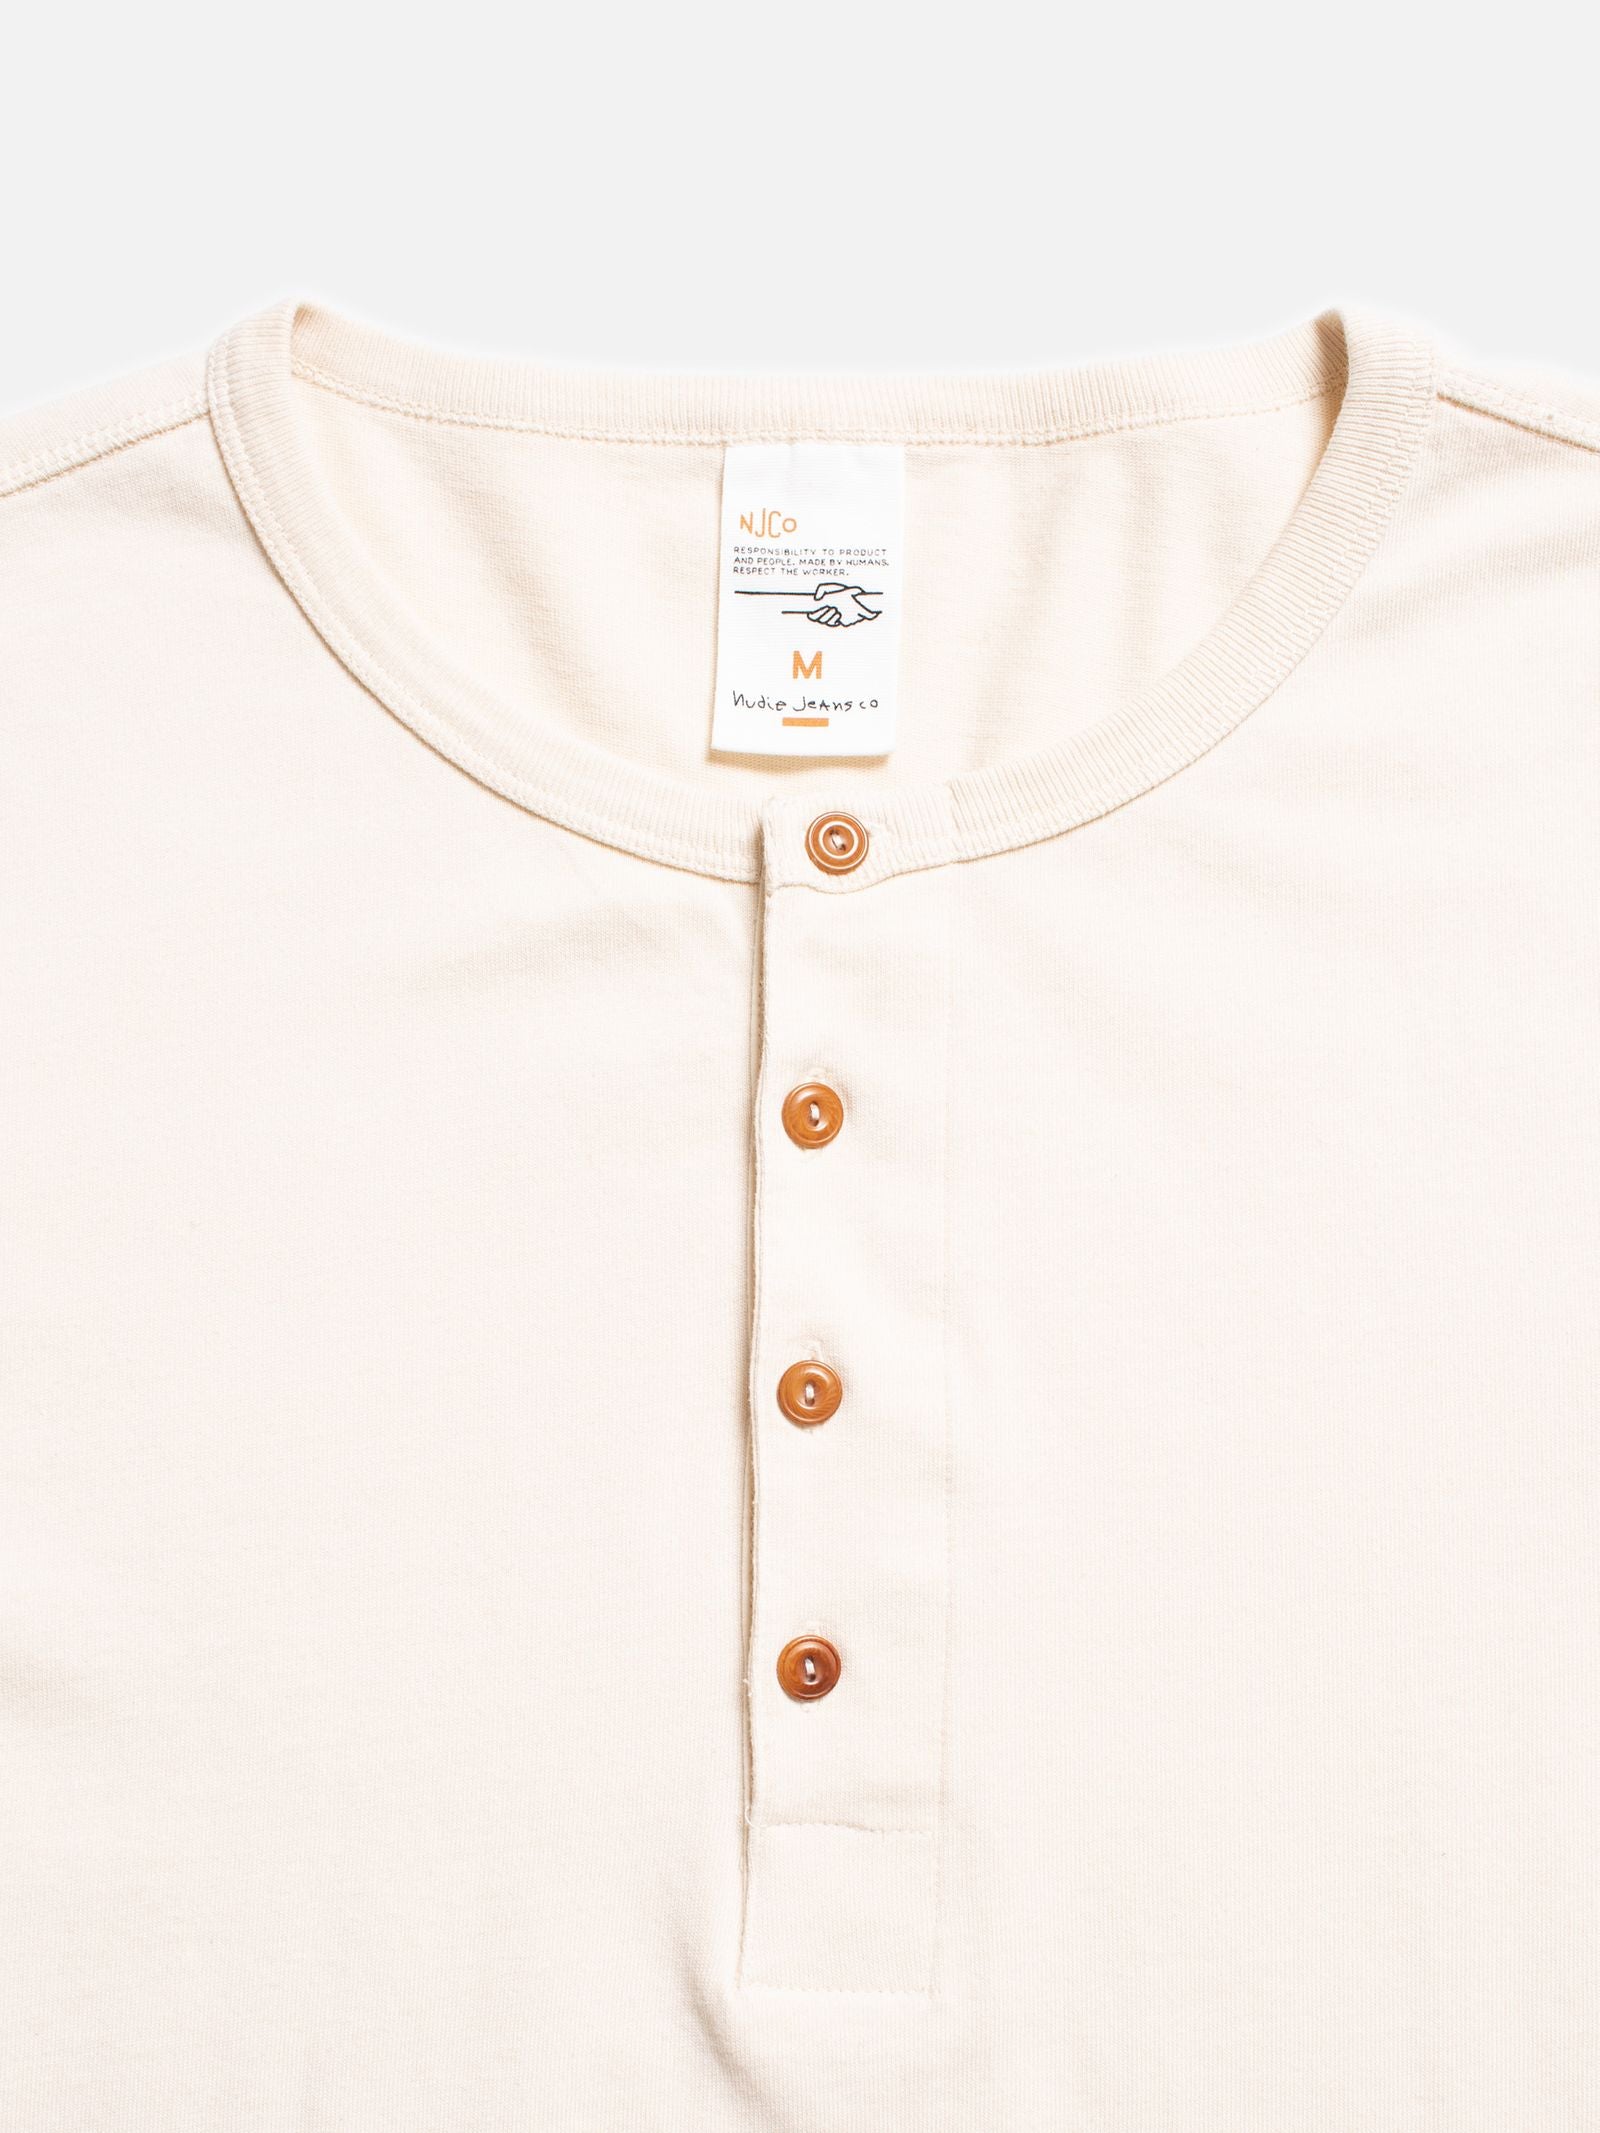 Long Sleeve Henley T-Shirt